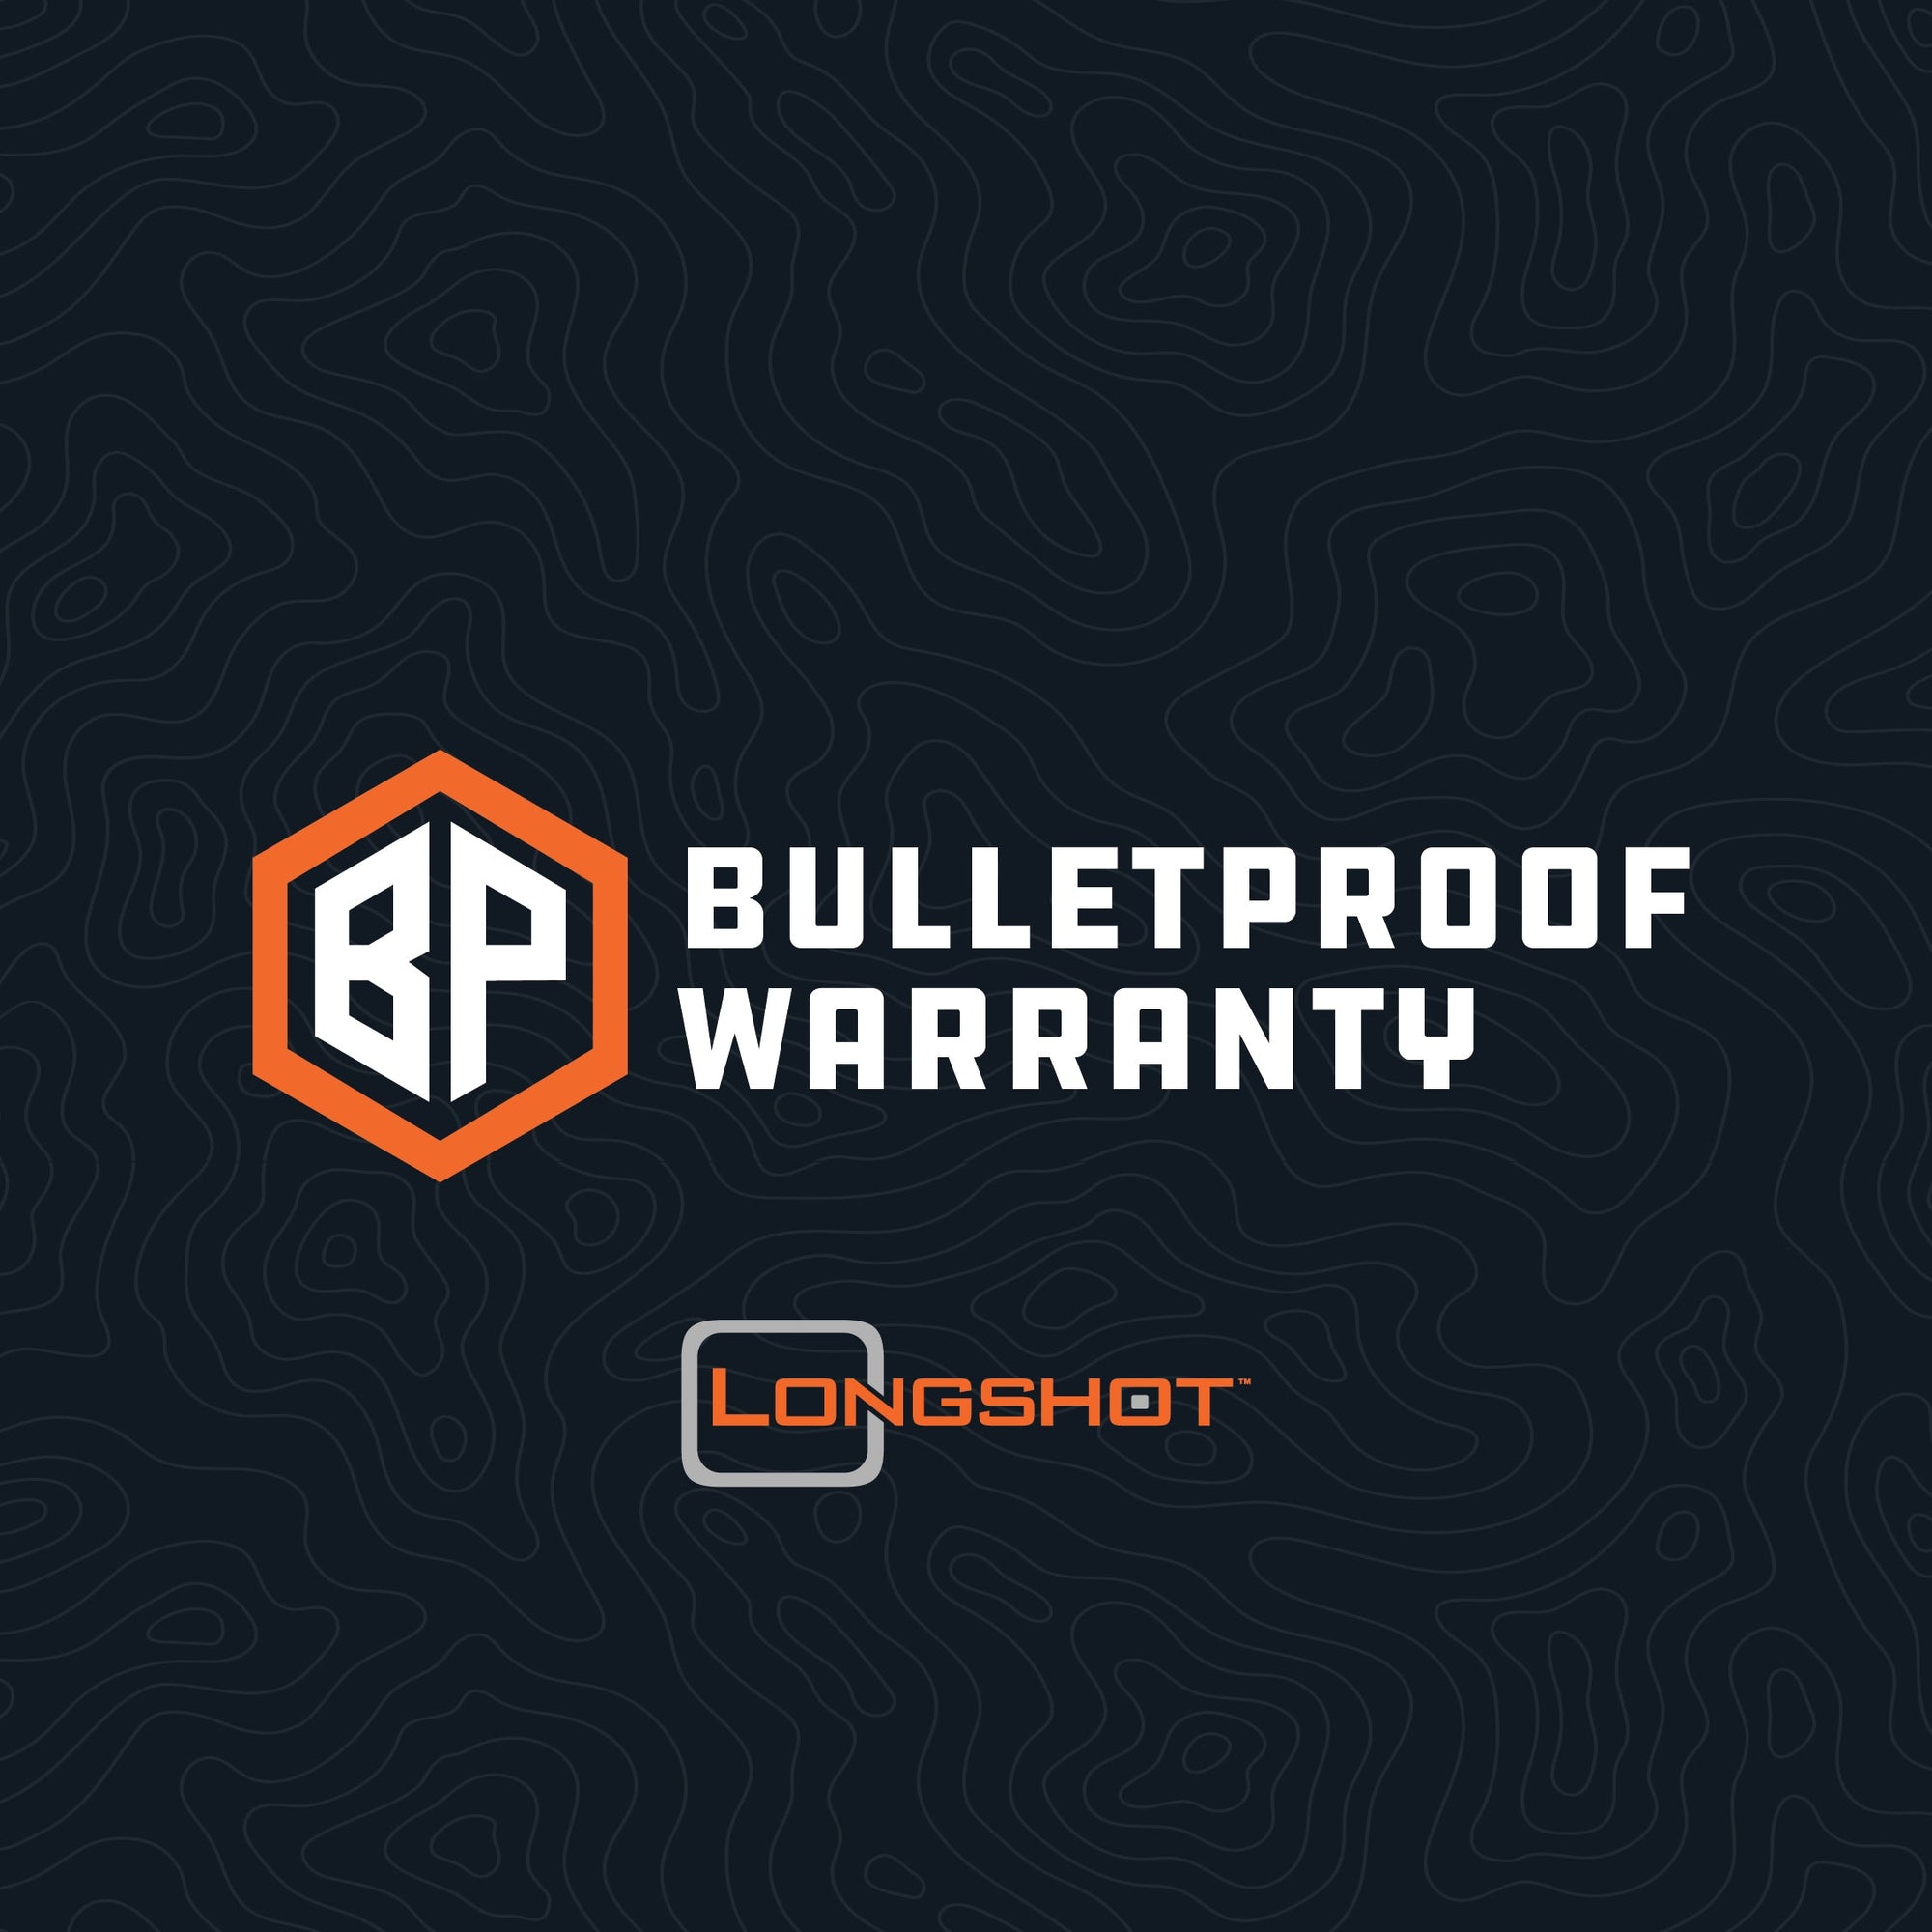 Bulletproof Warranty – For Target Camera System